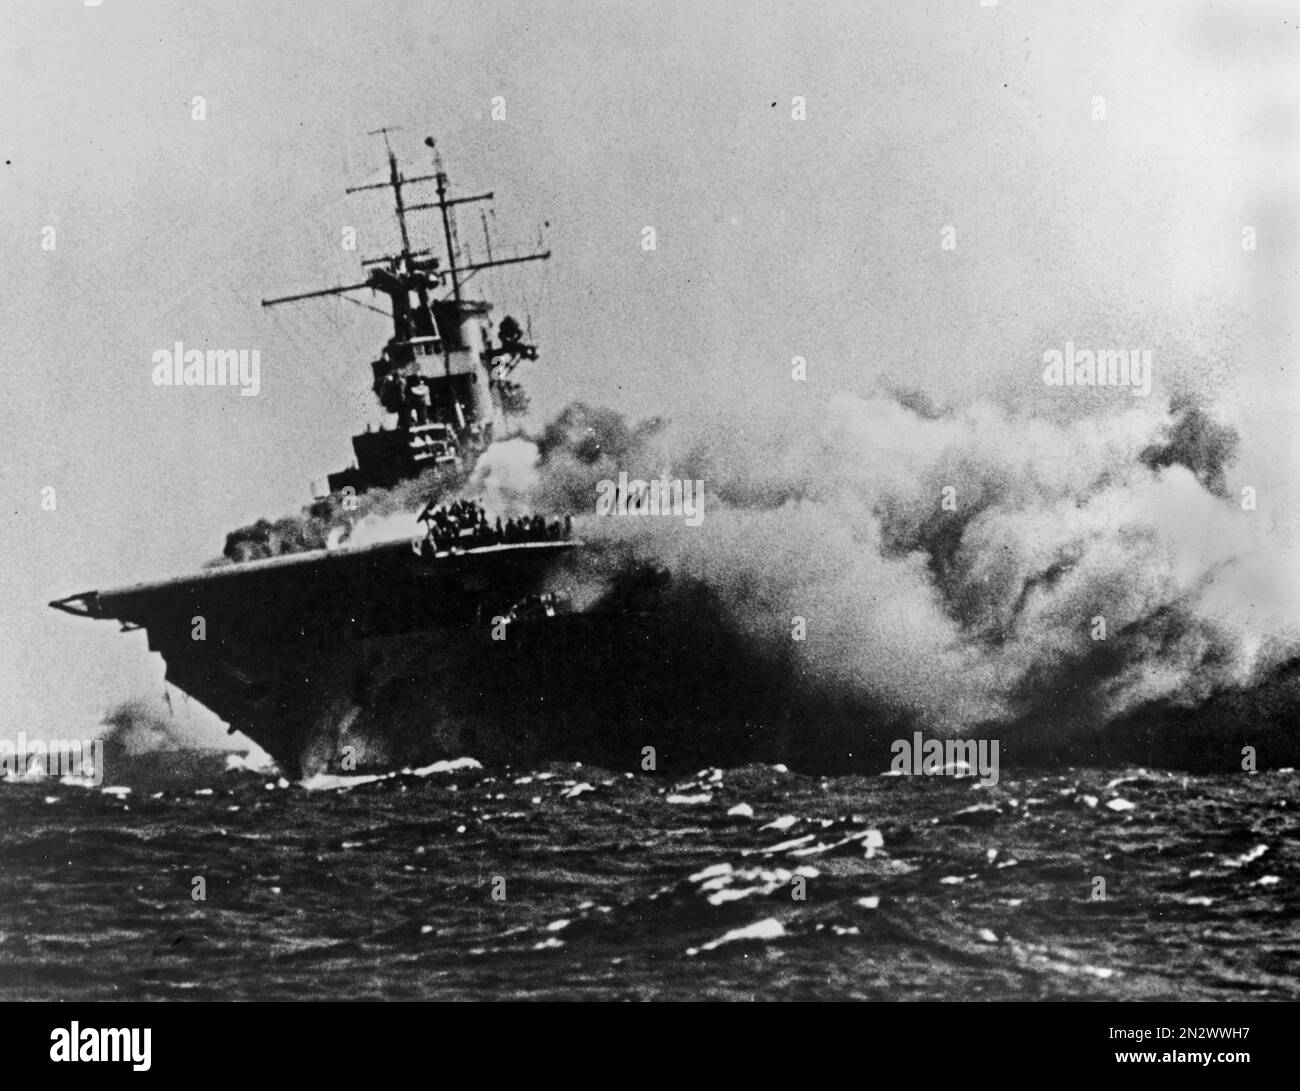 GUADALCANAL, SALOMONEN - 15. September 1942 - die USS Wasp ( CV-7 ) brannte und listete, nachdem sie vom japanischen U-Boot I-19 torpediert wurde, o Stockfoto